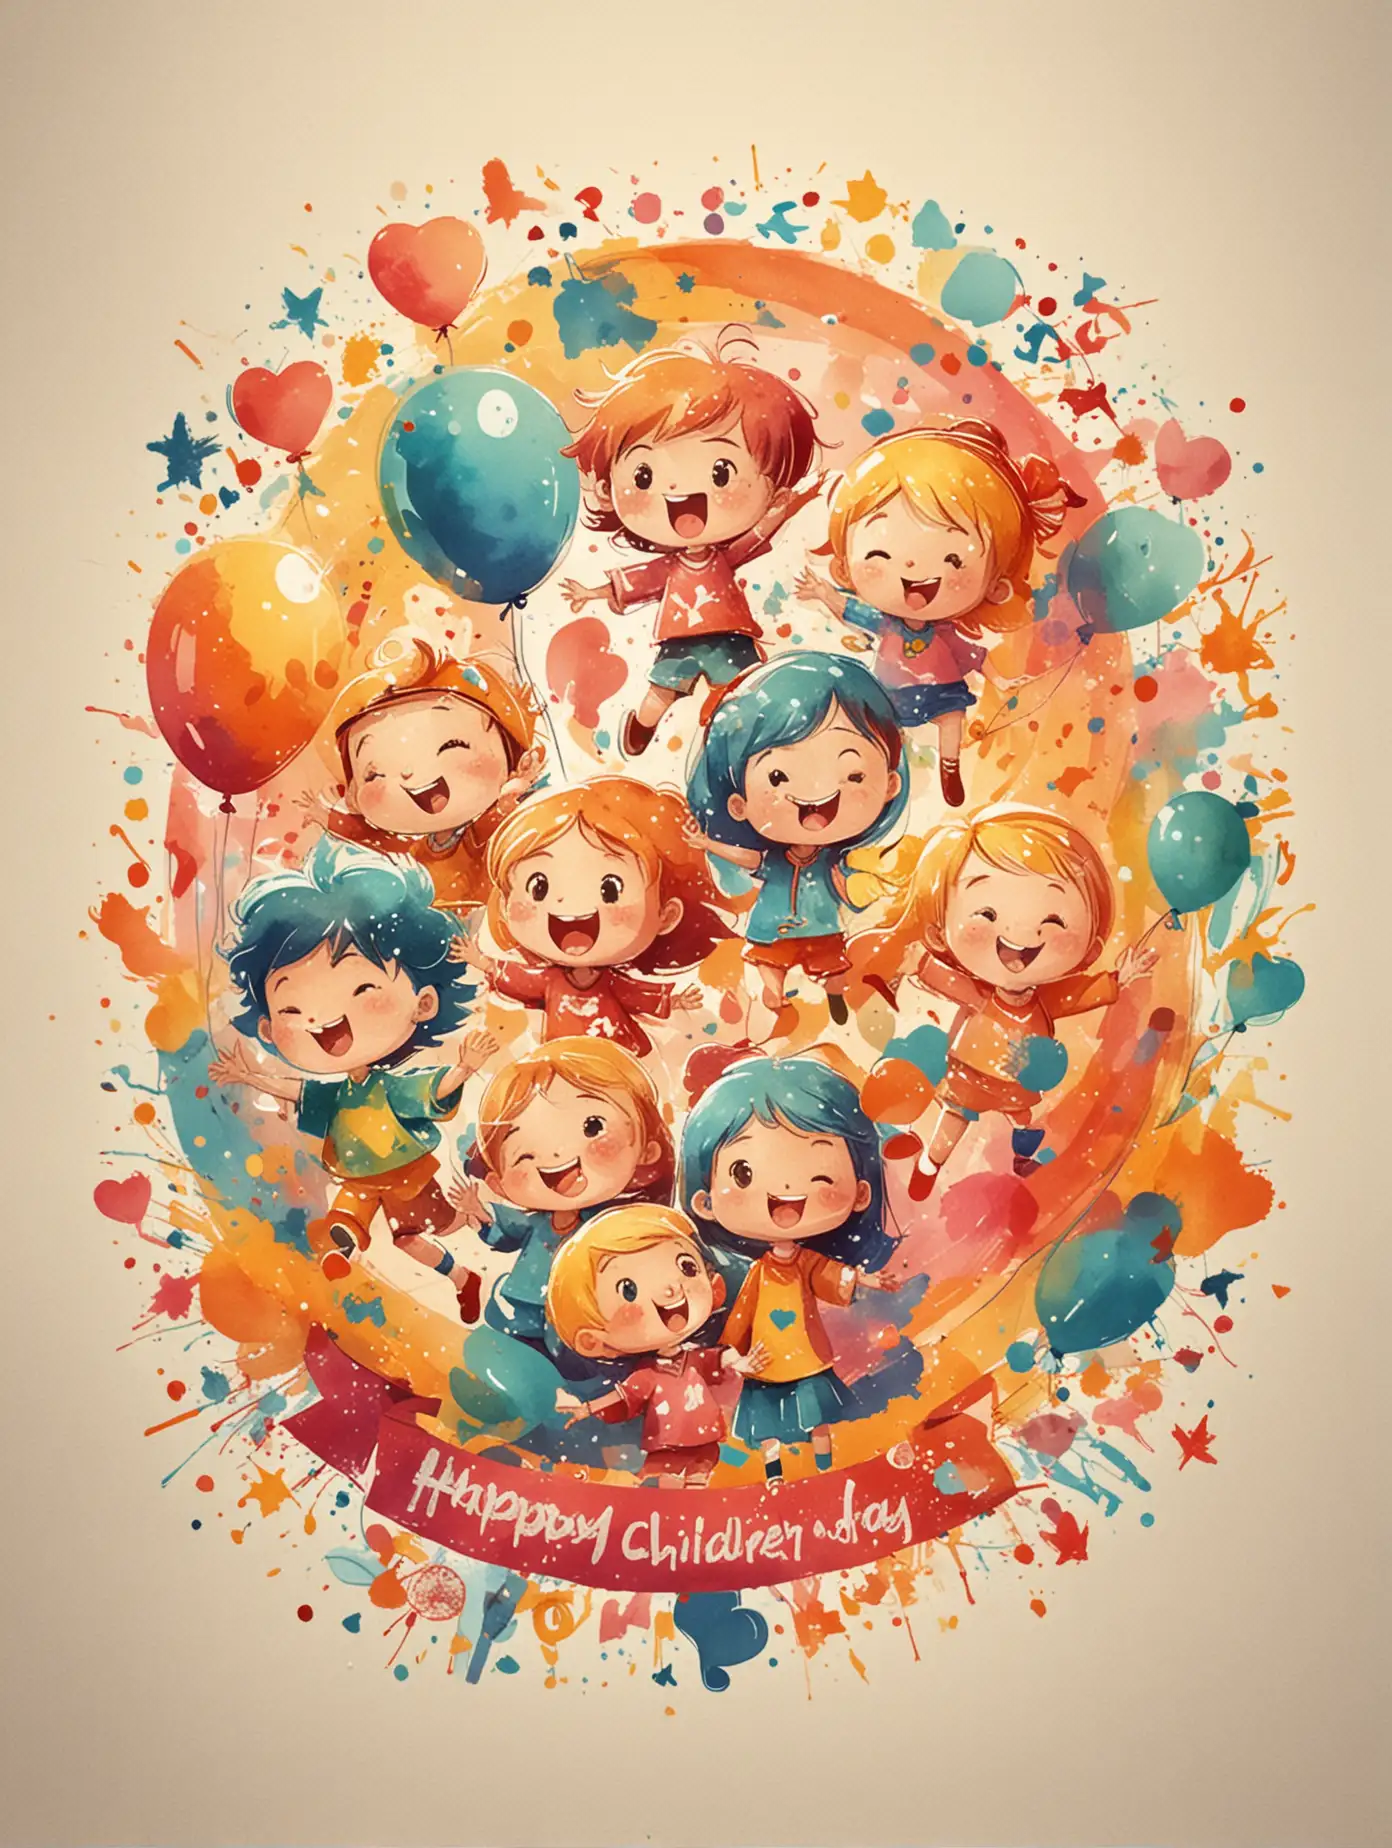 抽象風格的"Happy children's day"